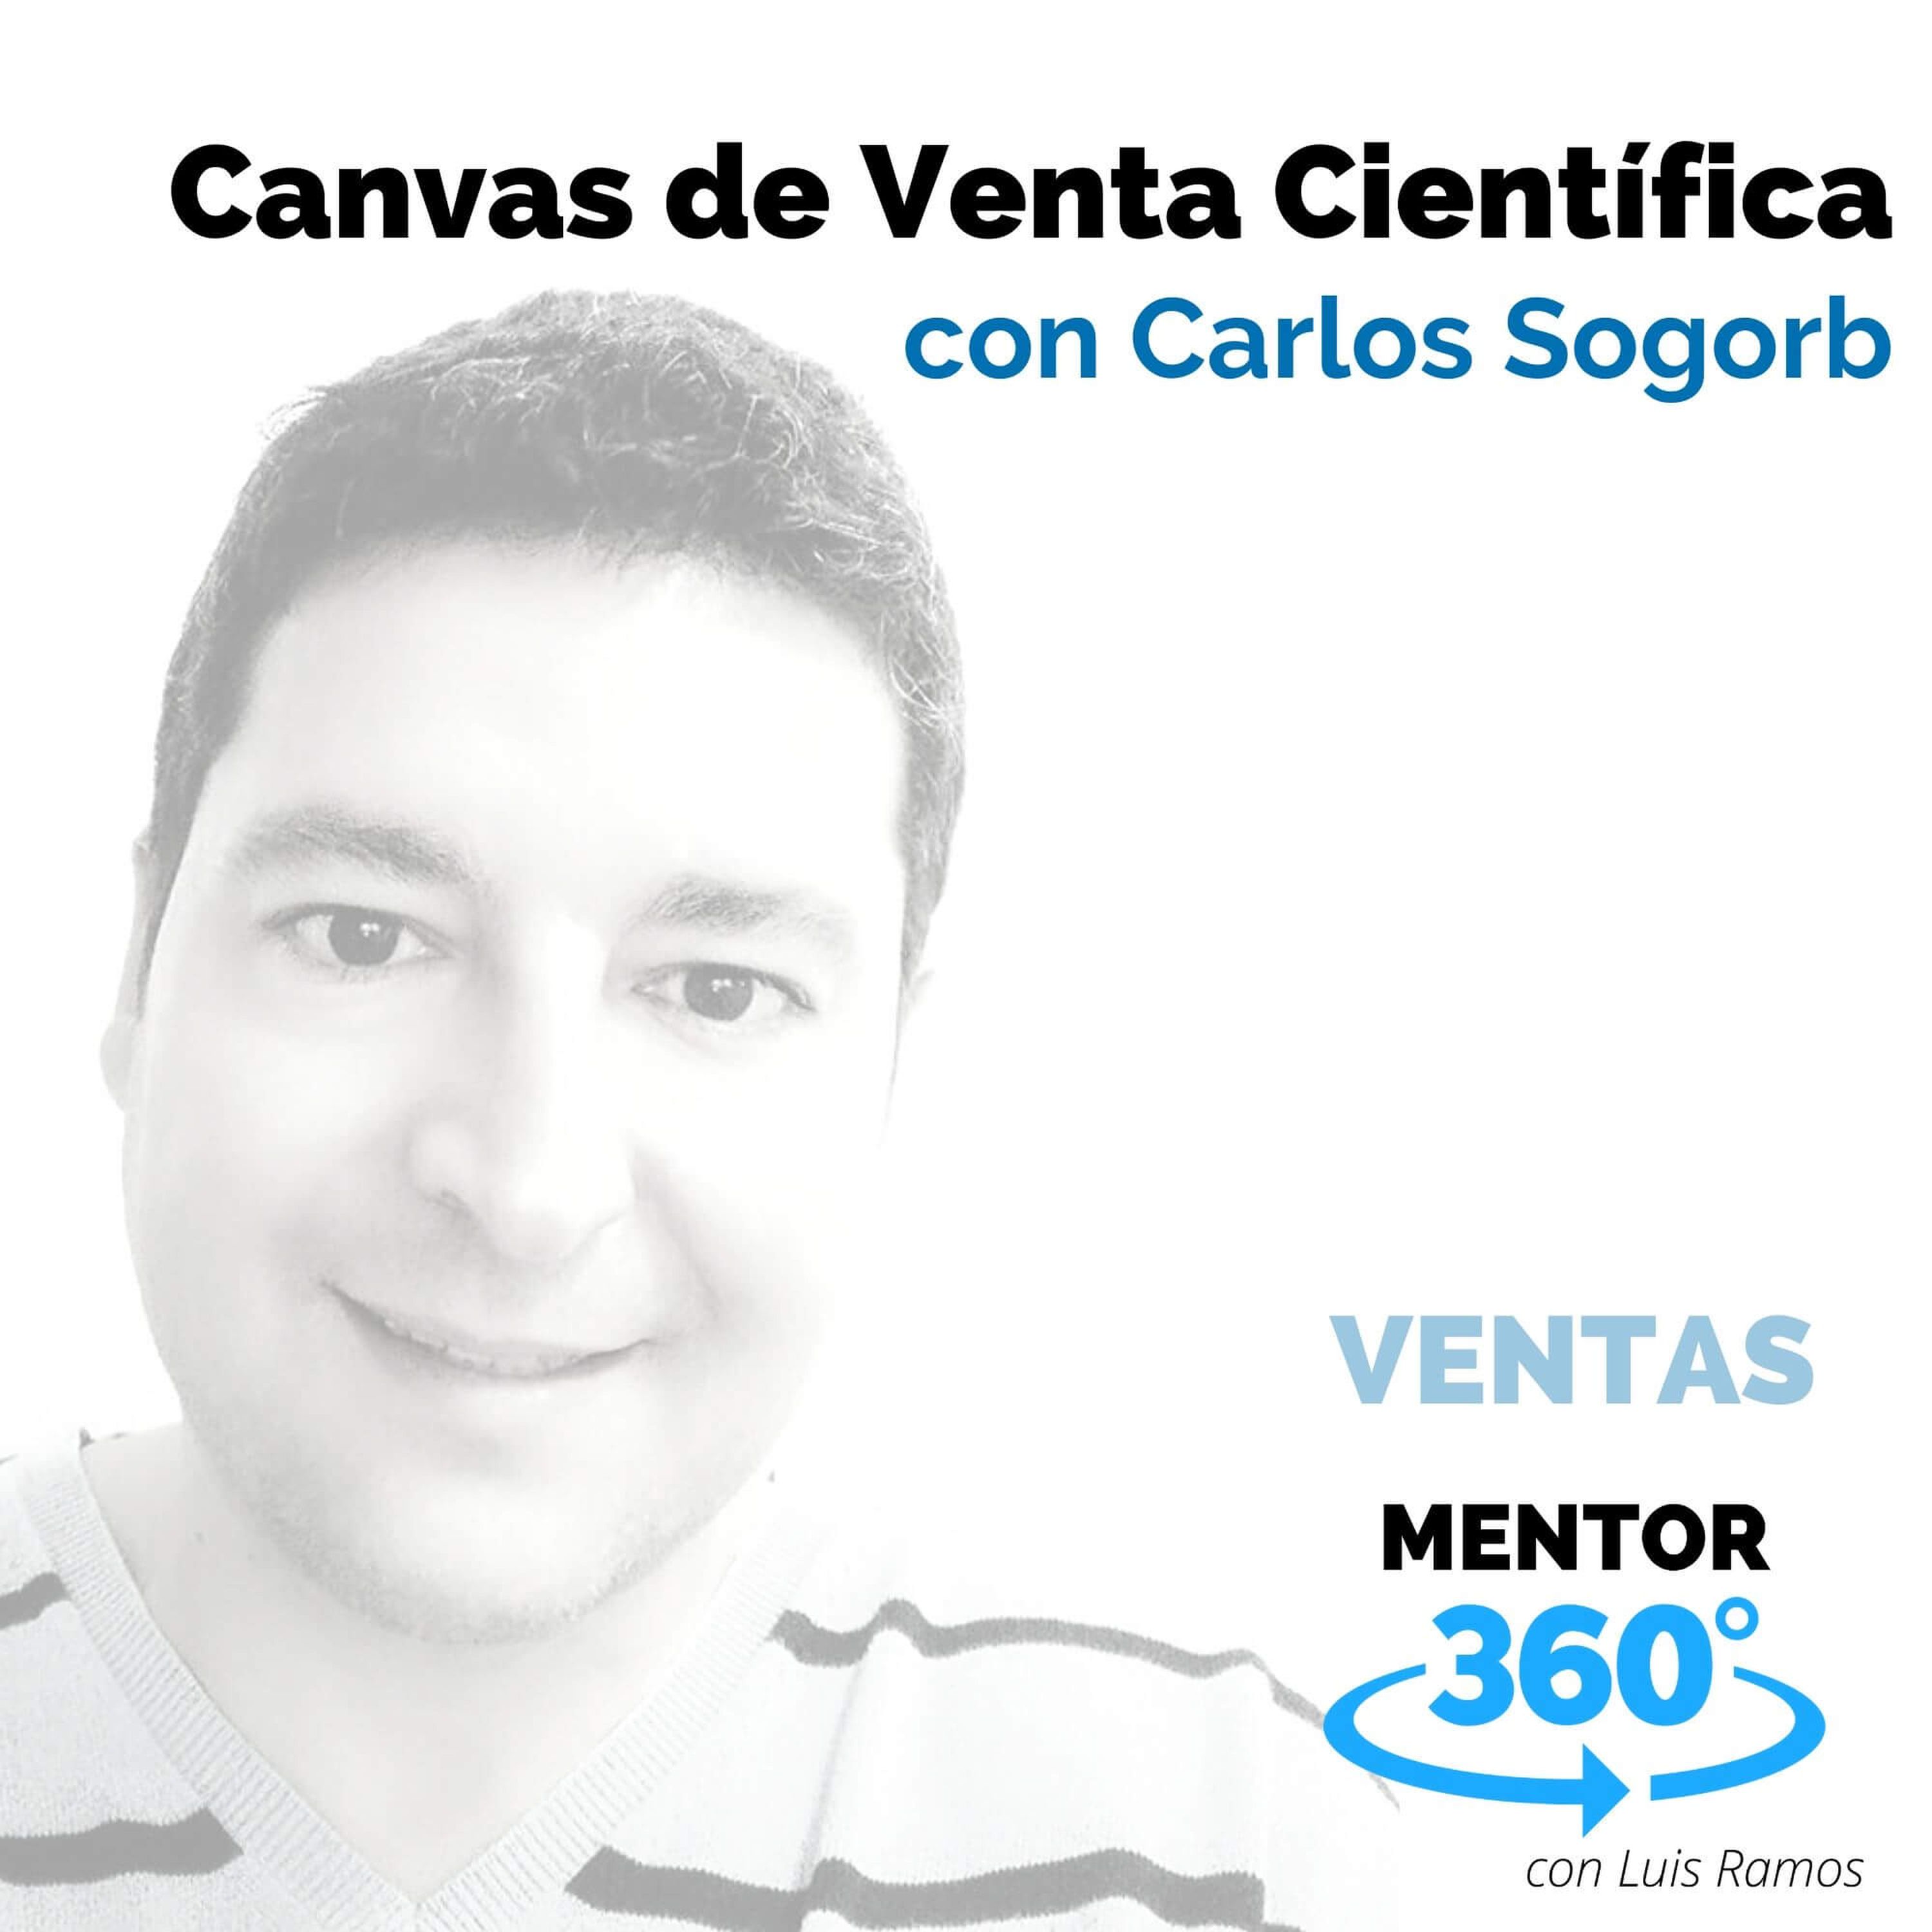 Canvas de Venta Científica, Con Carlos Sogorb - VENTAS